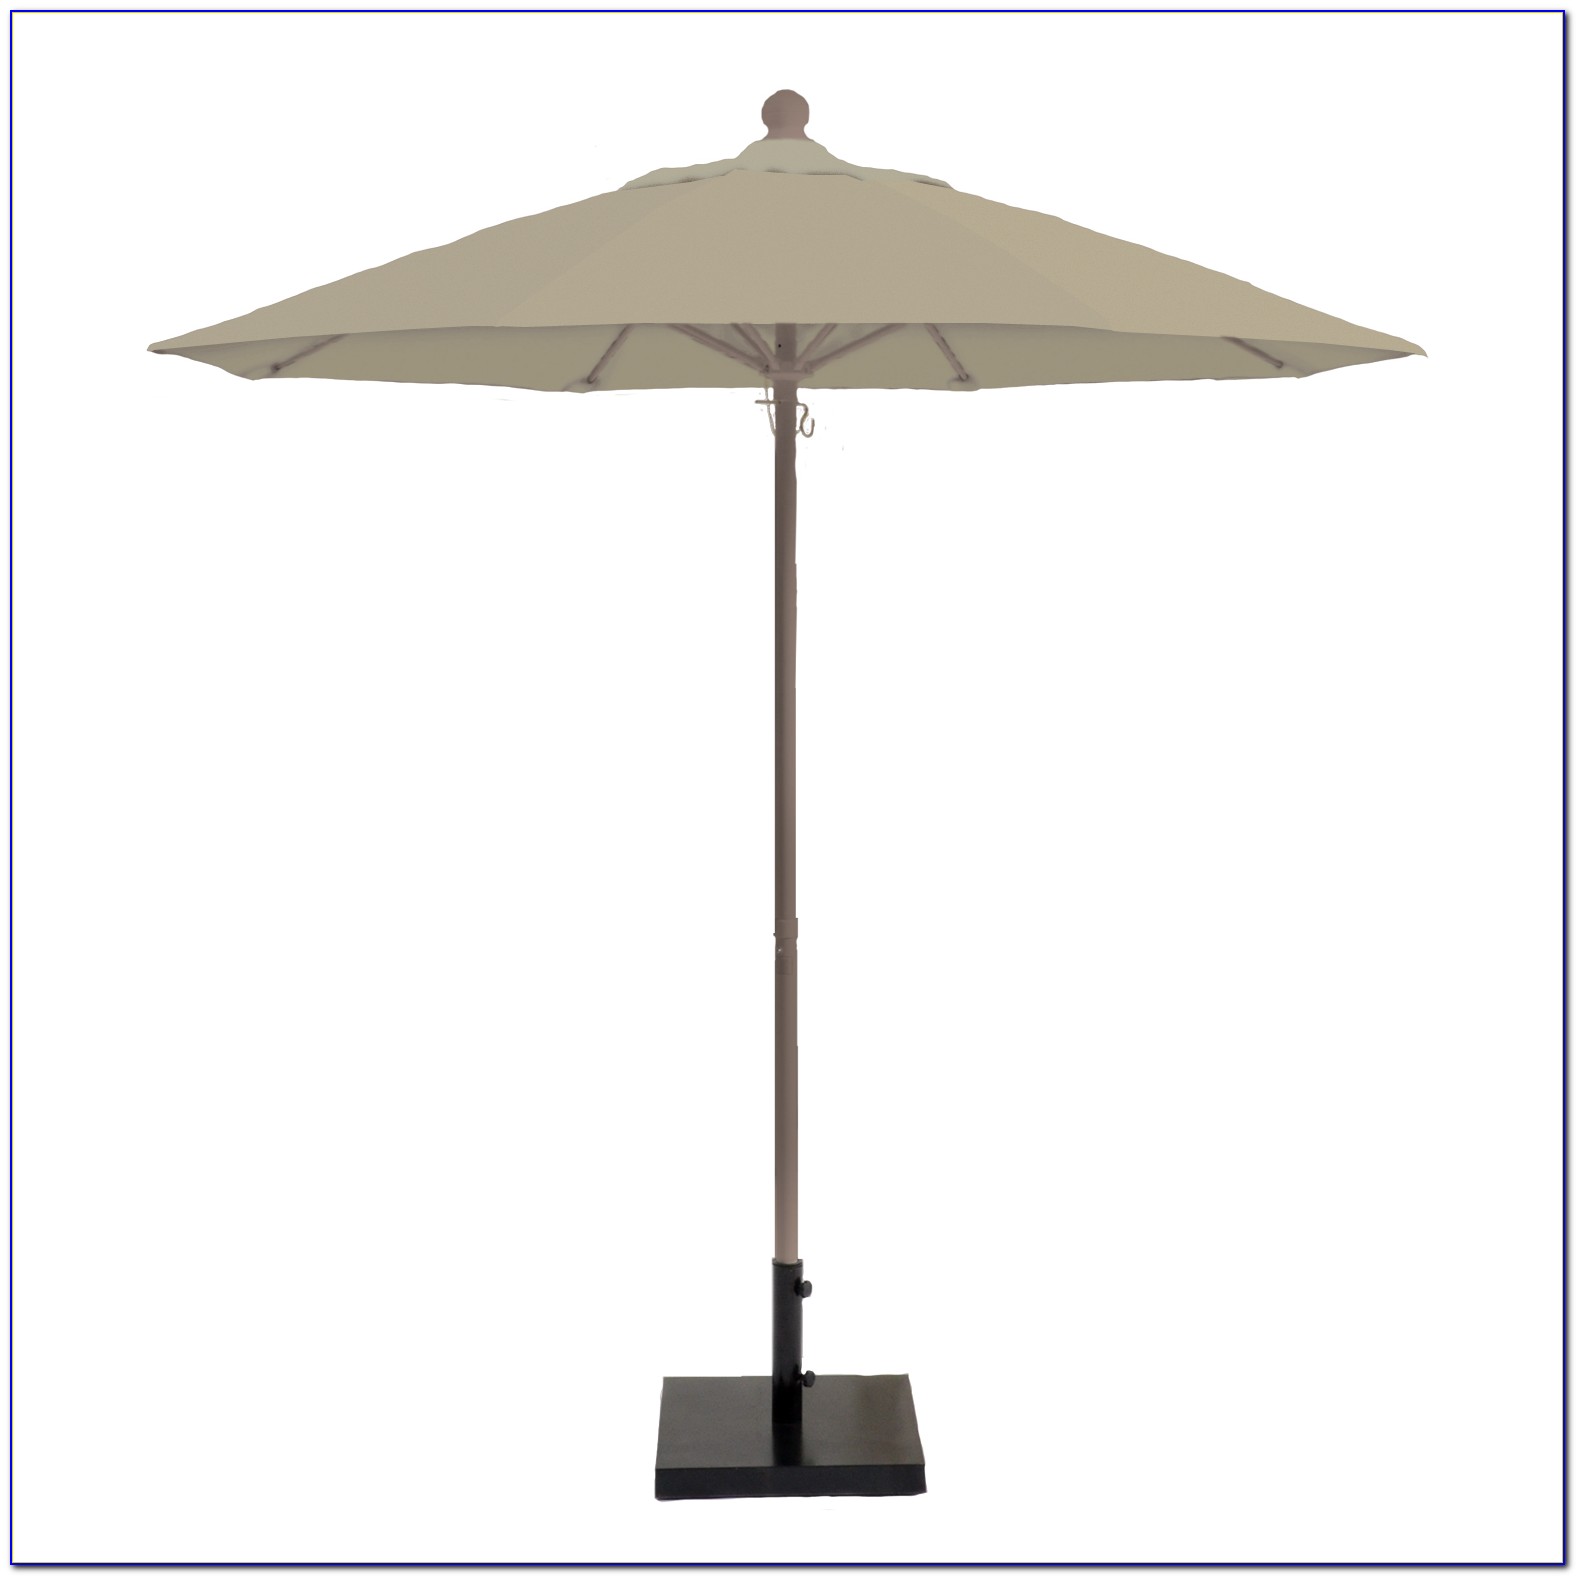 Sears Patio Umbrella Cover